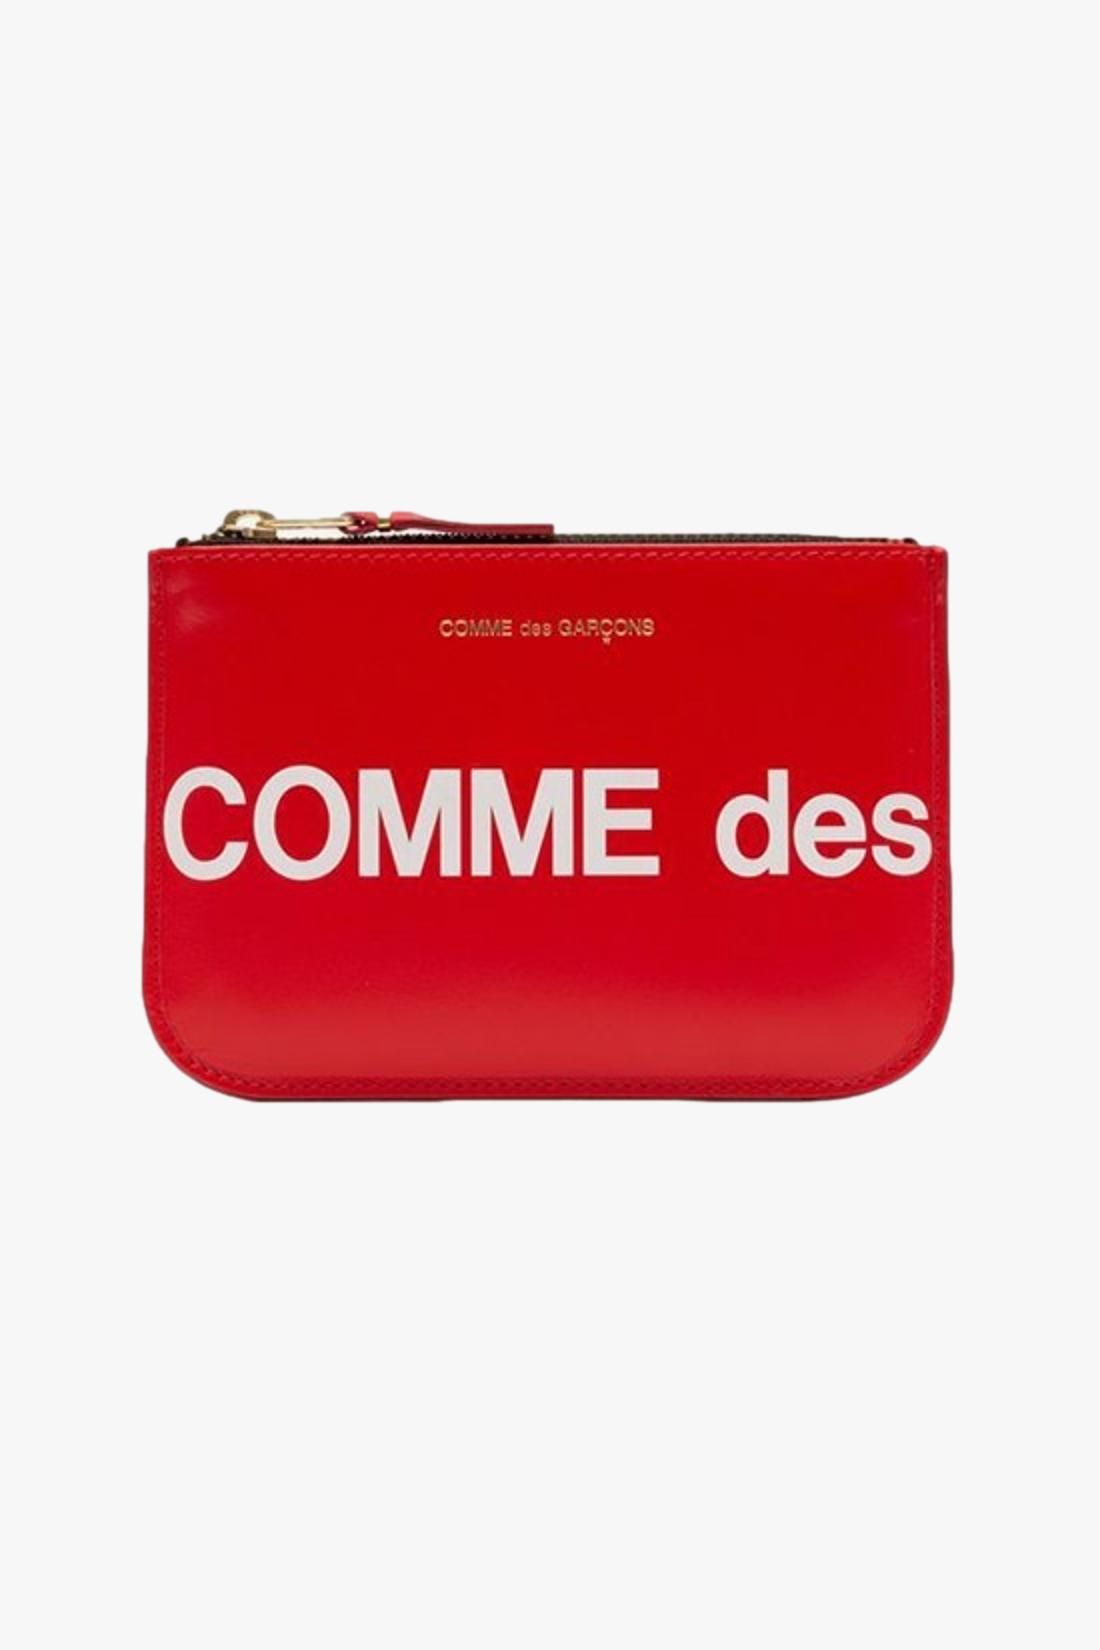 COMME DES GARÇONS WALLETS / Cdg huge logo wallet sa8100hl Red